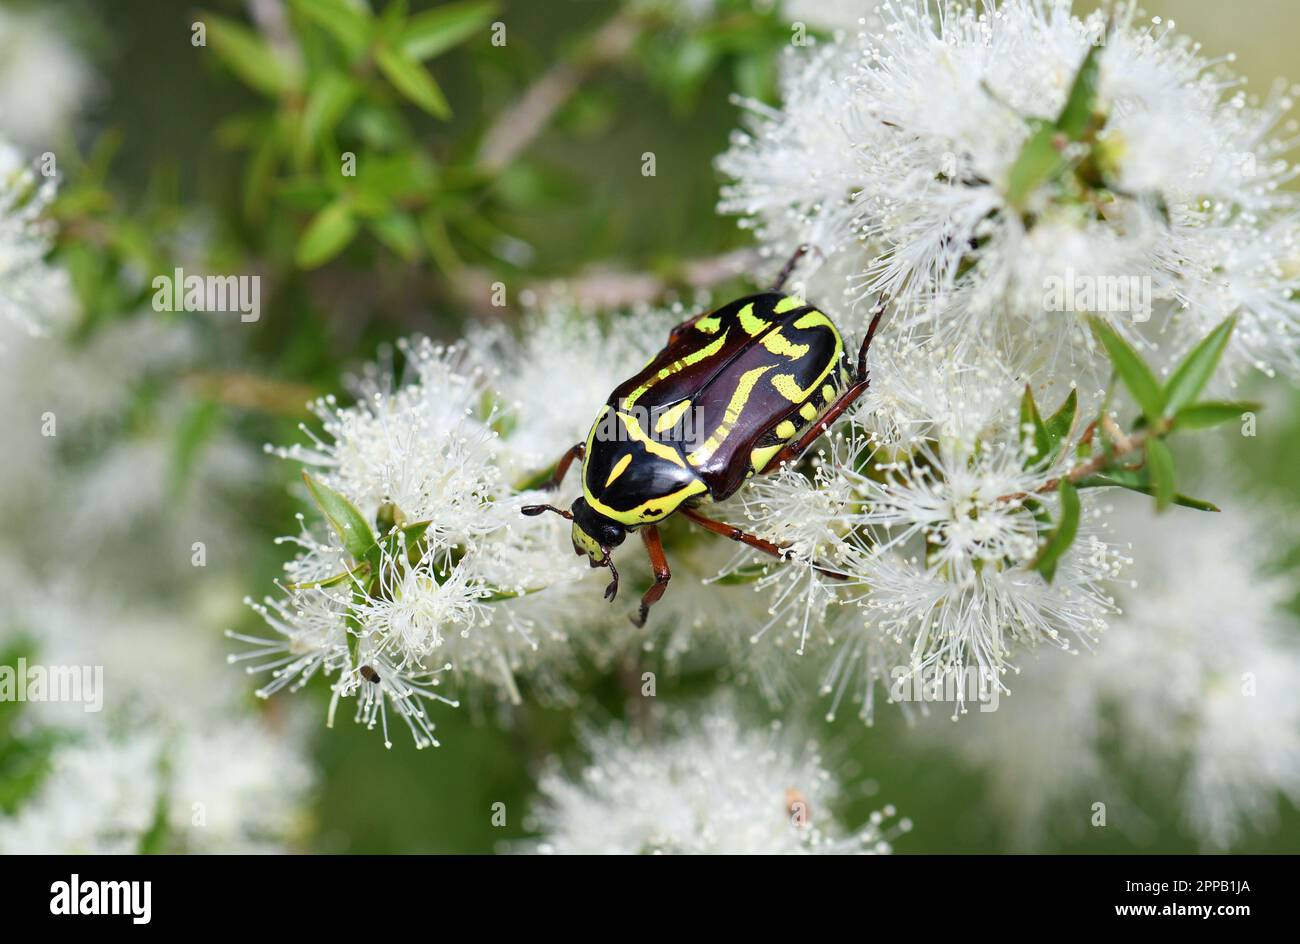 Gros plan de Fiddler Beetle, originaire d'Australie, Eupoecila australasiae, famille des Scarabaeidae, se nourrissant du nectar des fleurs d'arbre à thé de Melaleuca, Cowra NSW Banque D'Images